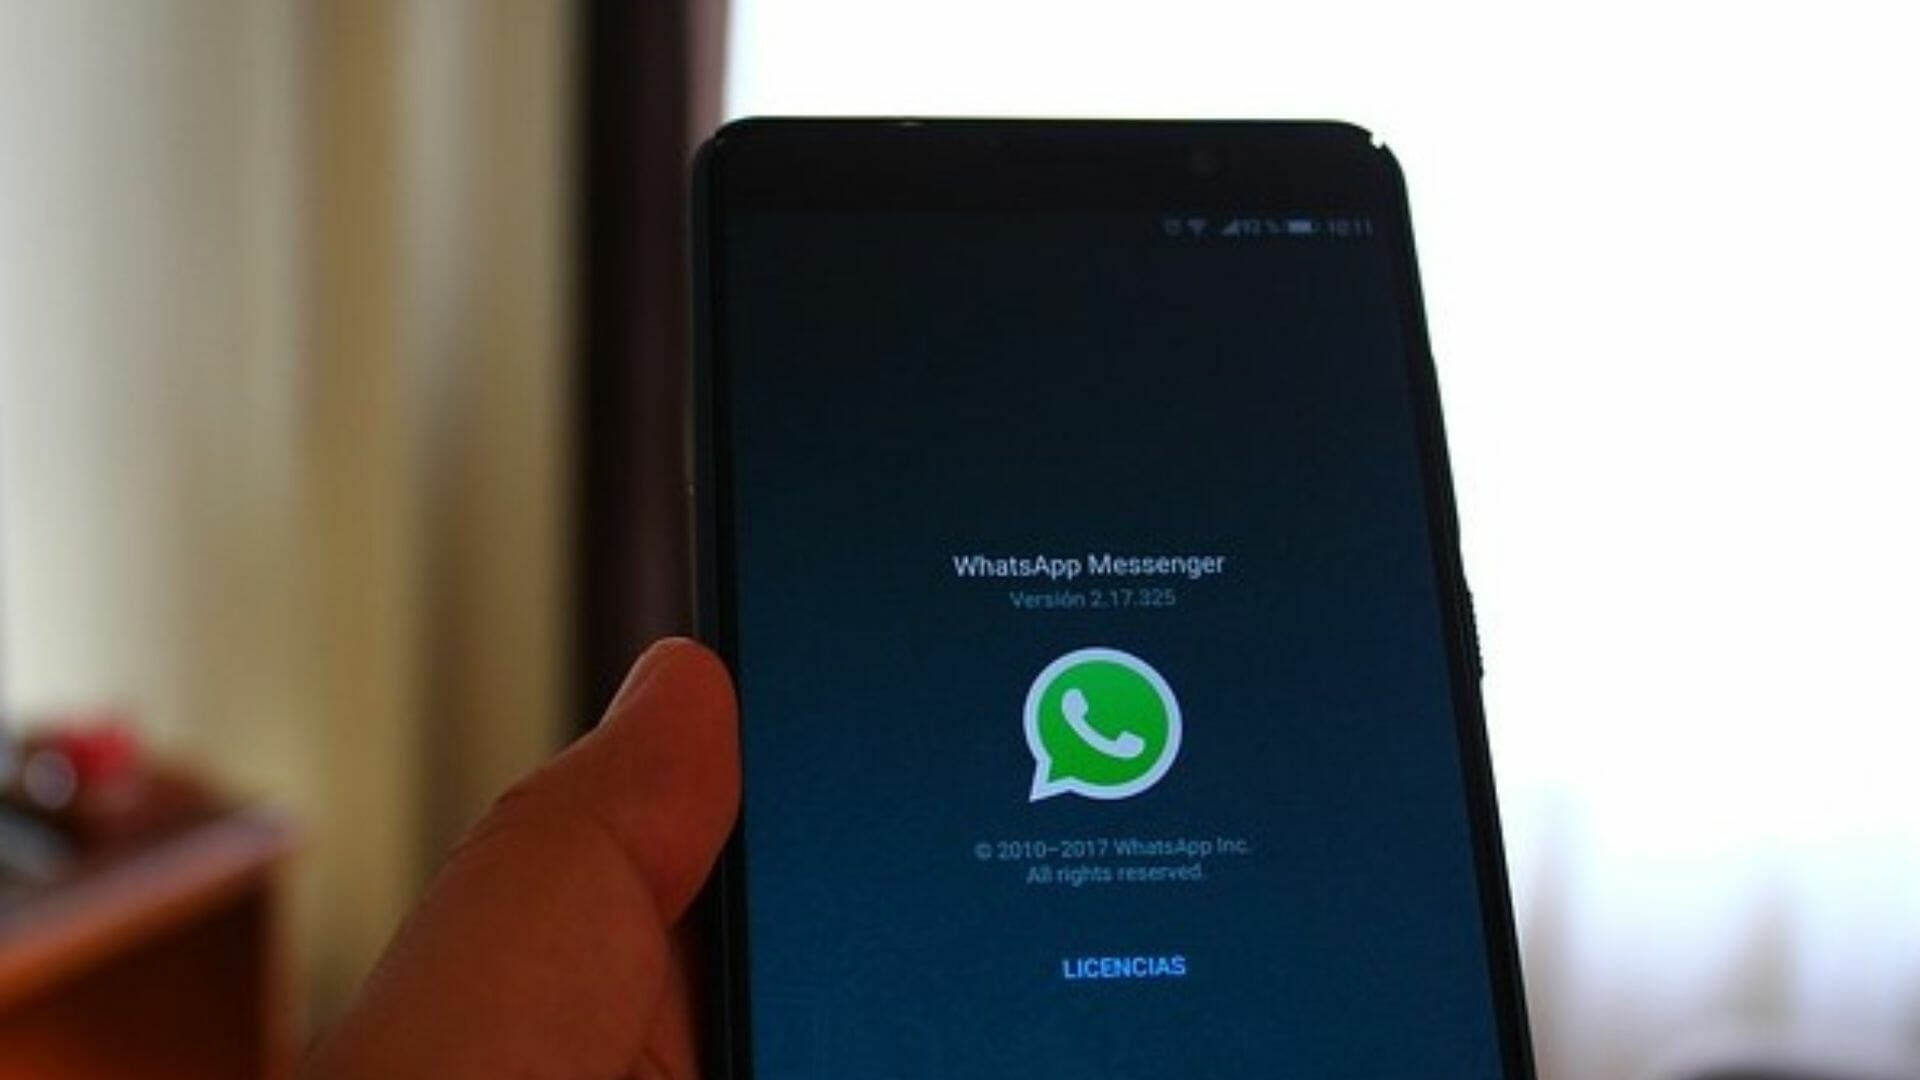 cara mengaktifkan kembali WhatsApp yang terblokir permanen